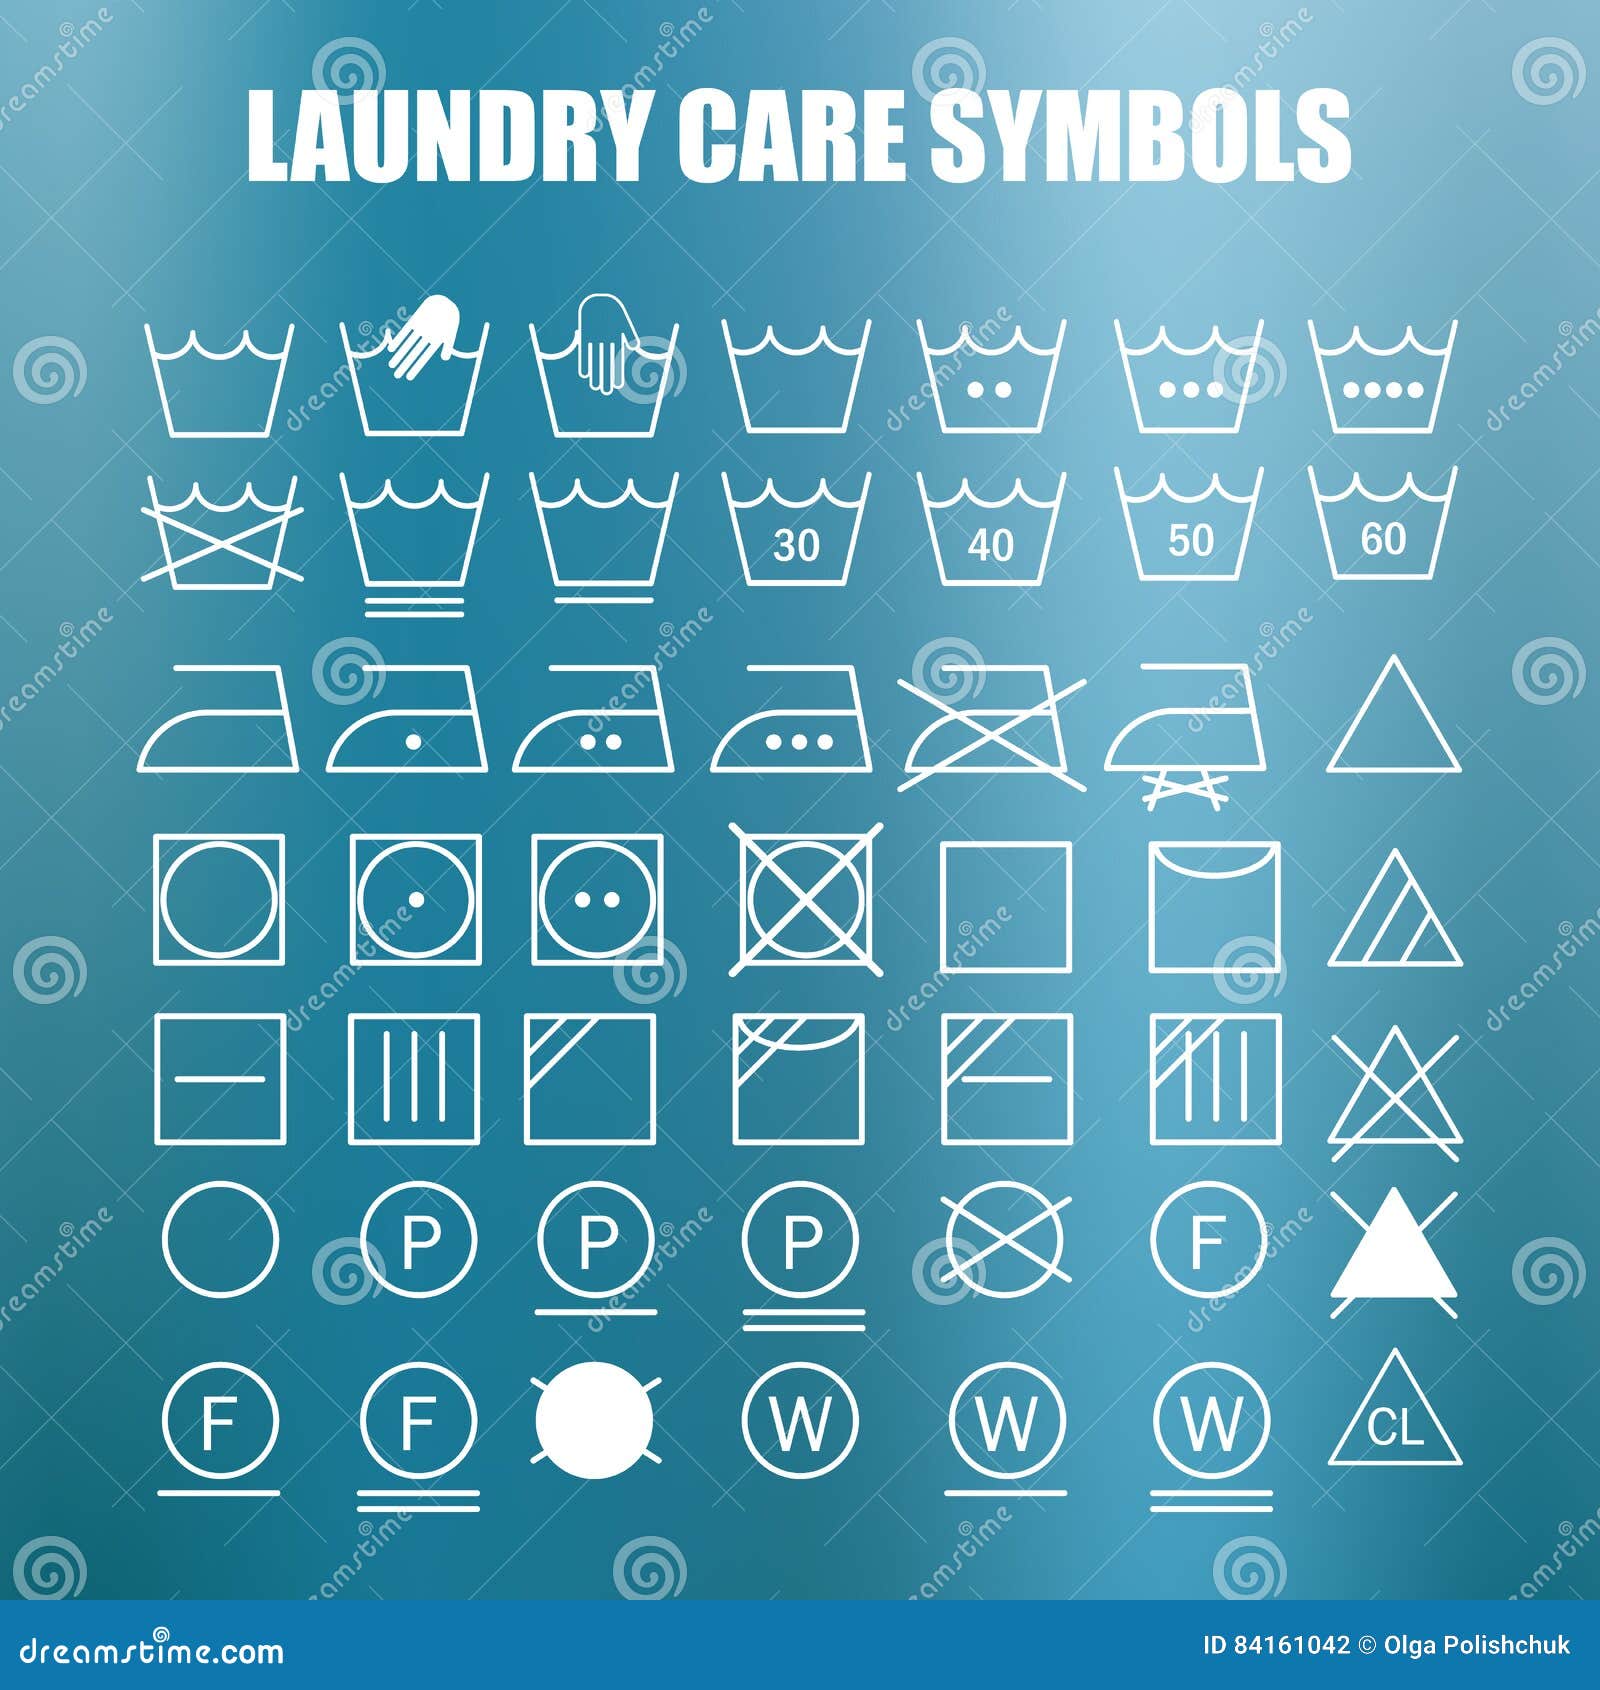 Laundry care symbols set stock illustration. Illustration of element ...